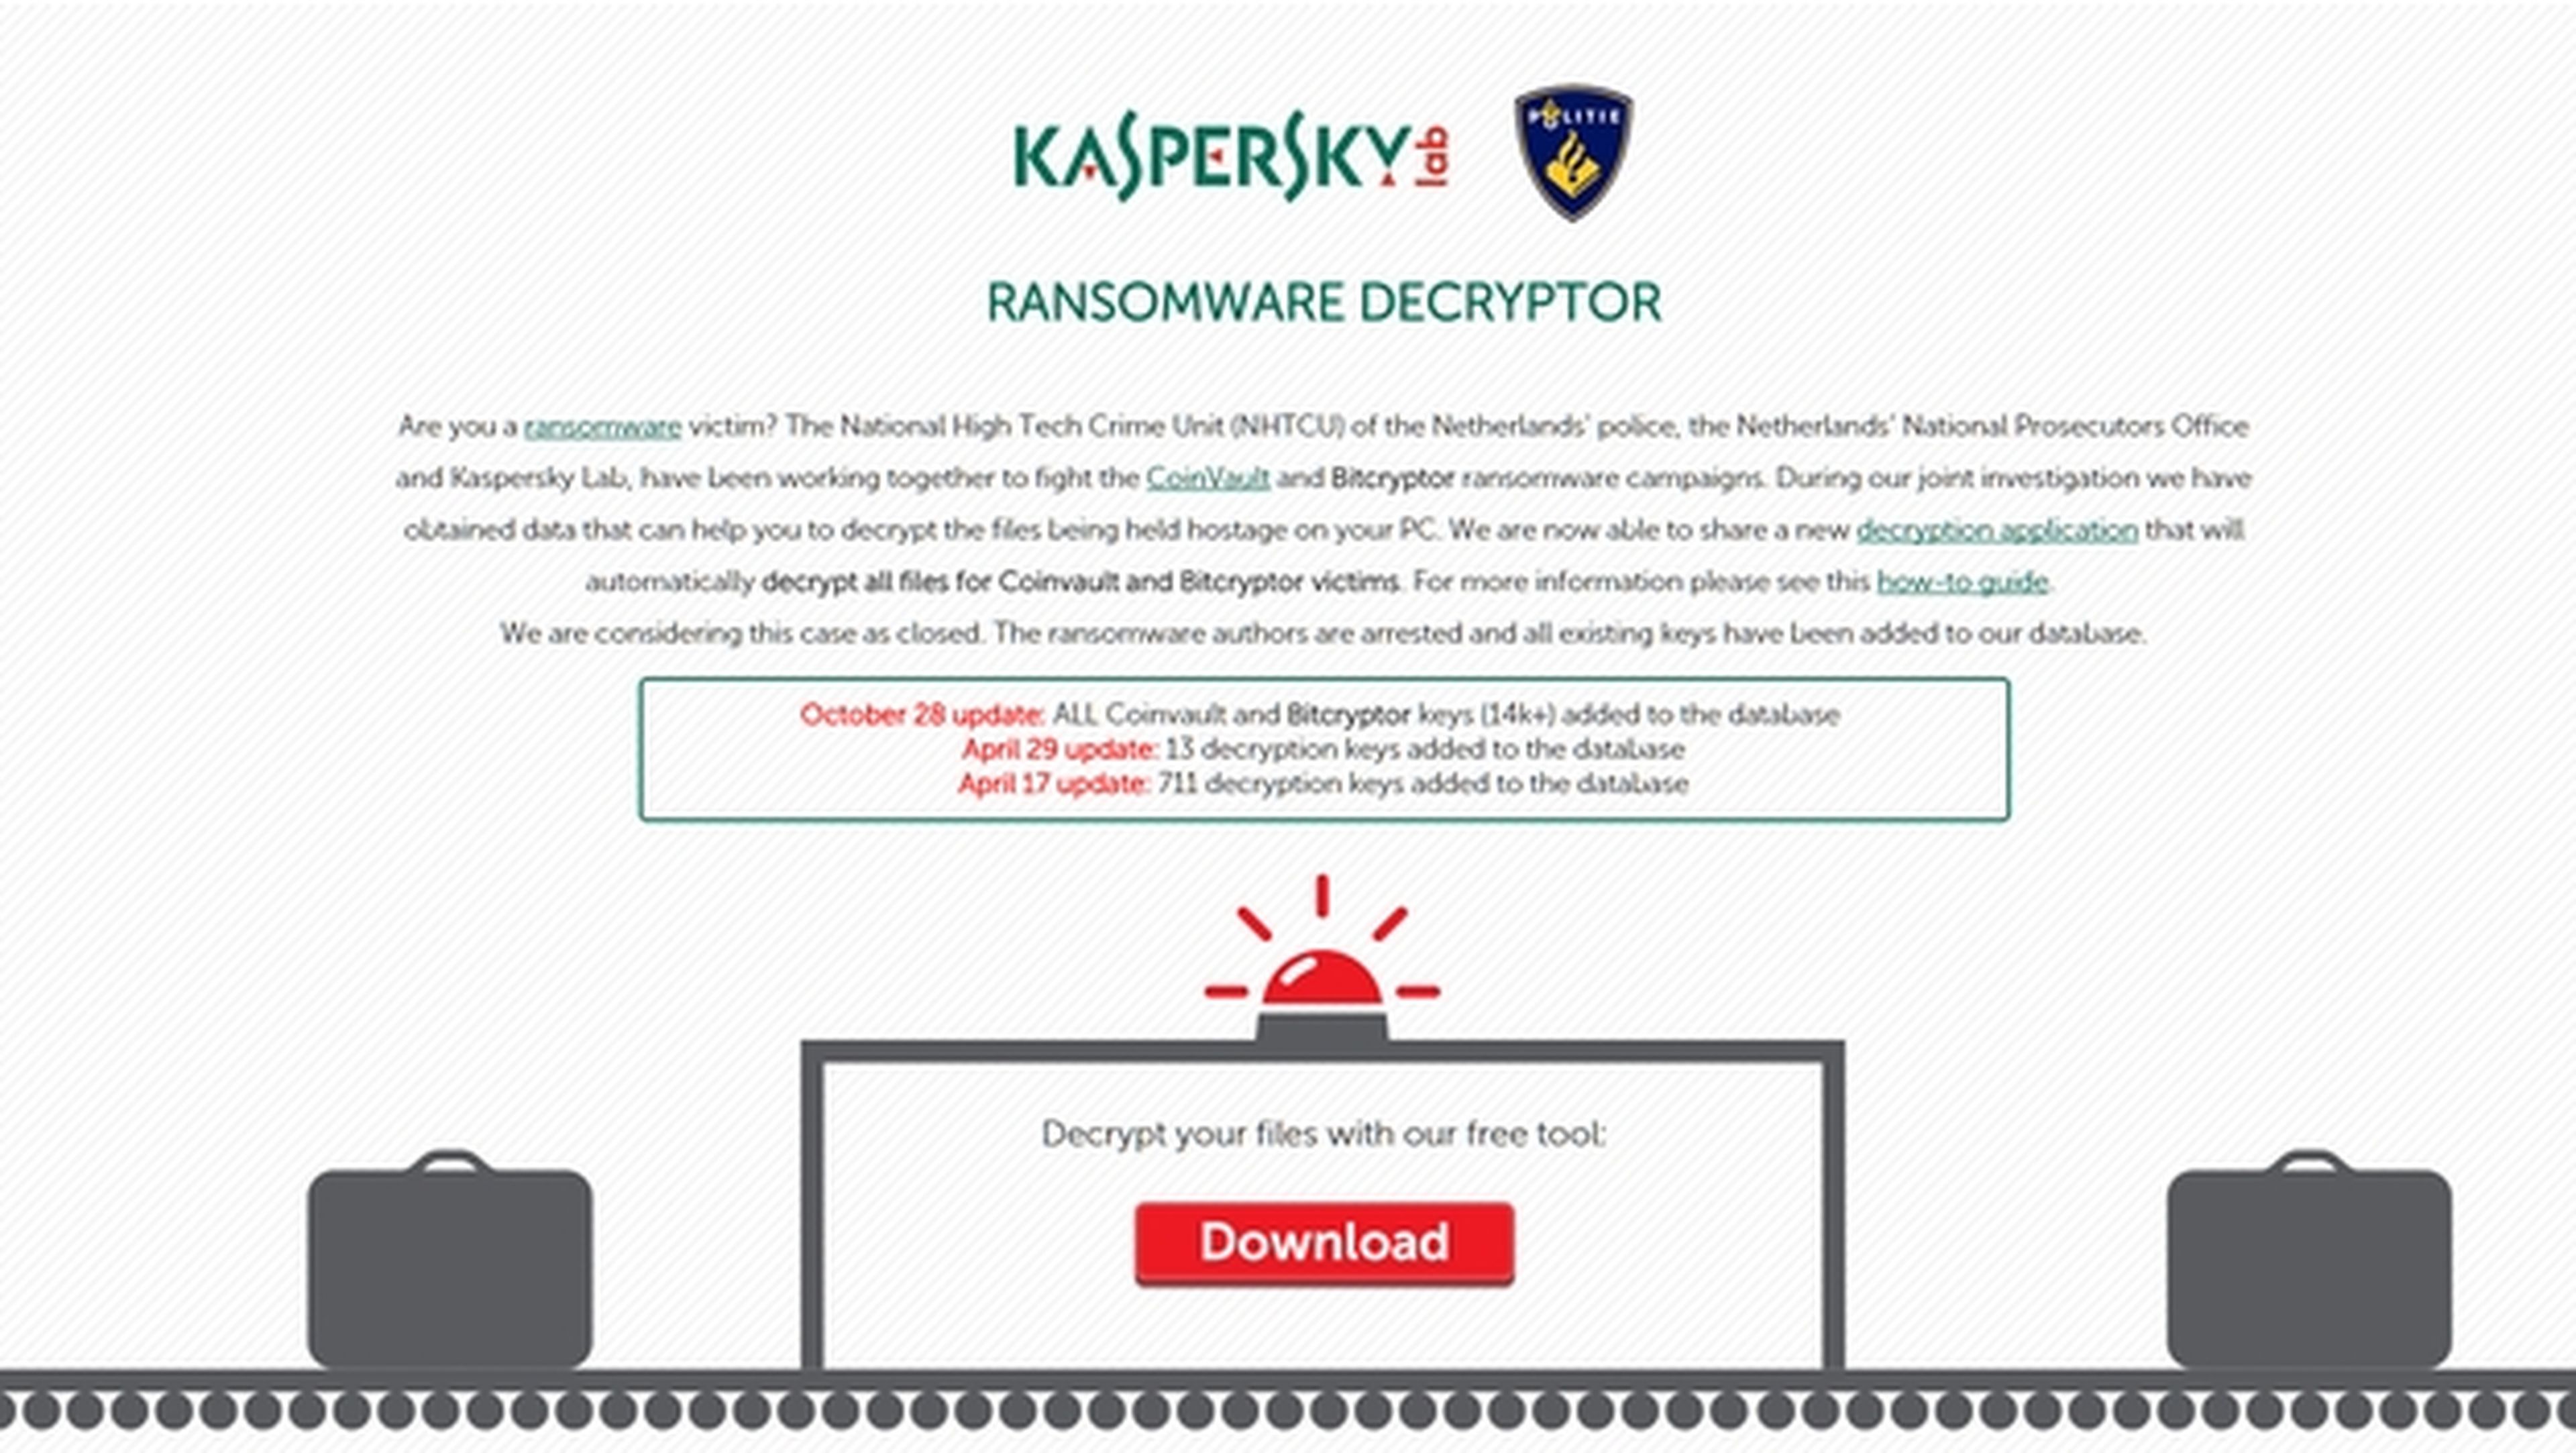 Kaspersky desencripta gratis los PCs secuestrados con ransomware